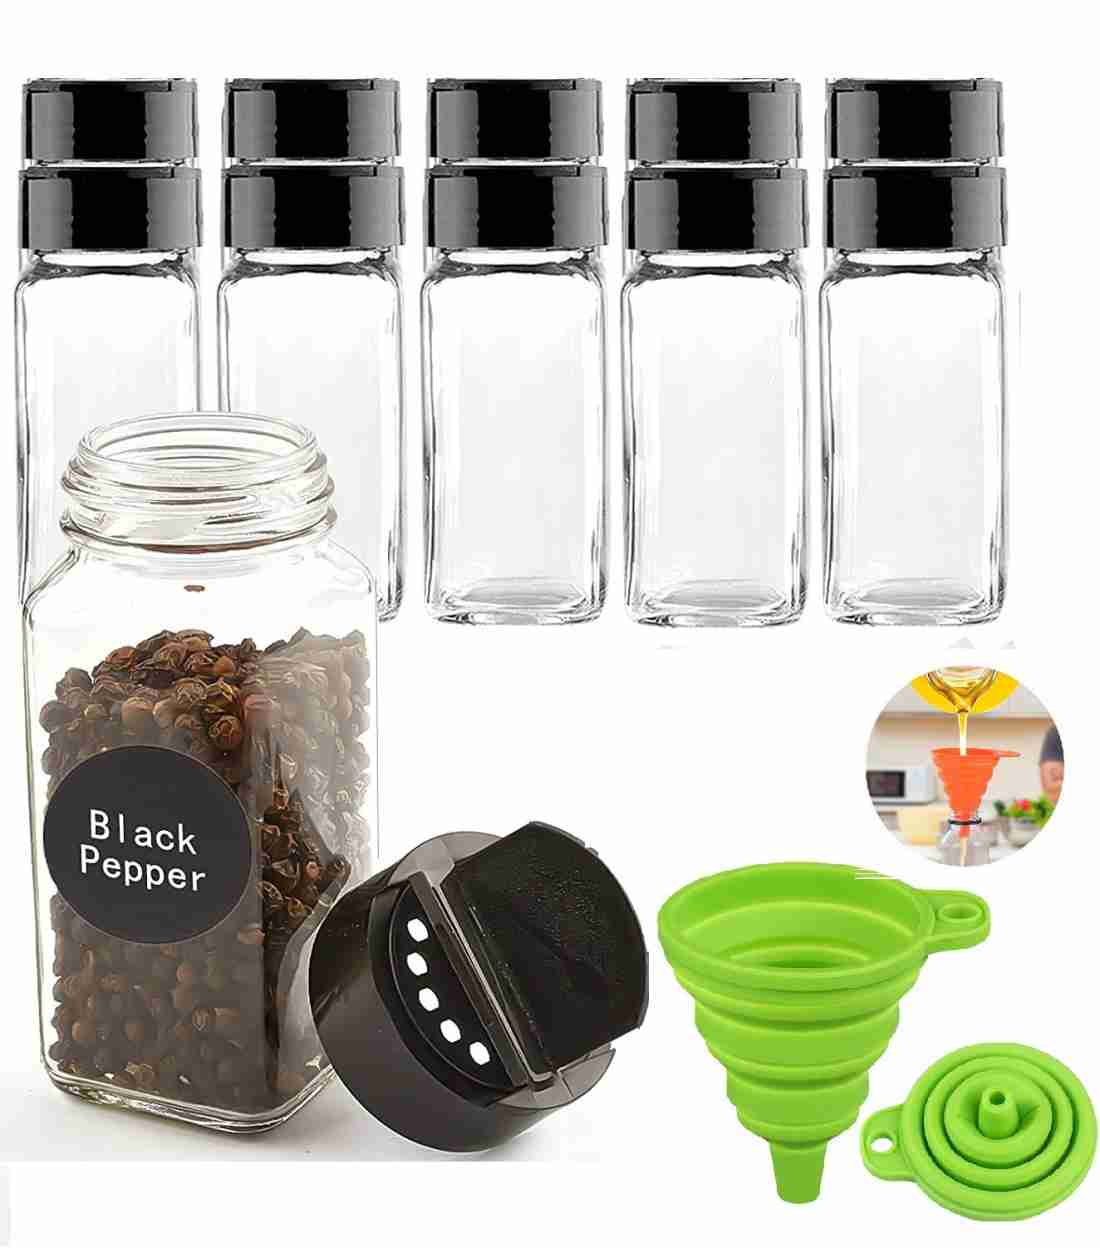 https://rukminim2.flixcart.com/image/1100/1300/l1b1oy80/condiment-set/y/o/u/salt-pepper-jar-120-ml-square-glass-spice-jar-with-silicone-original-imagcwhfyb4dybjb.jpeg?q=20